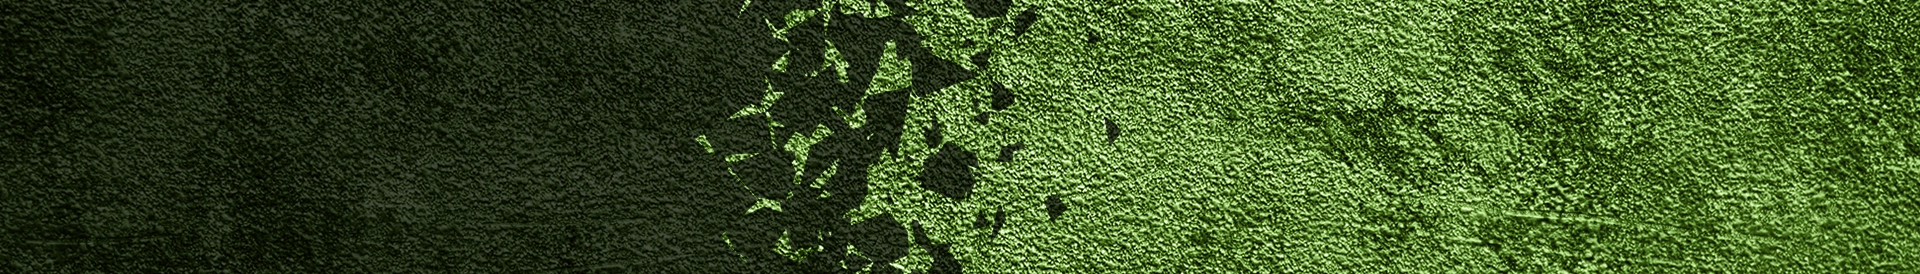 Zielona chropowata powierzchnia